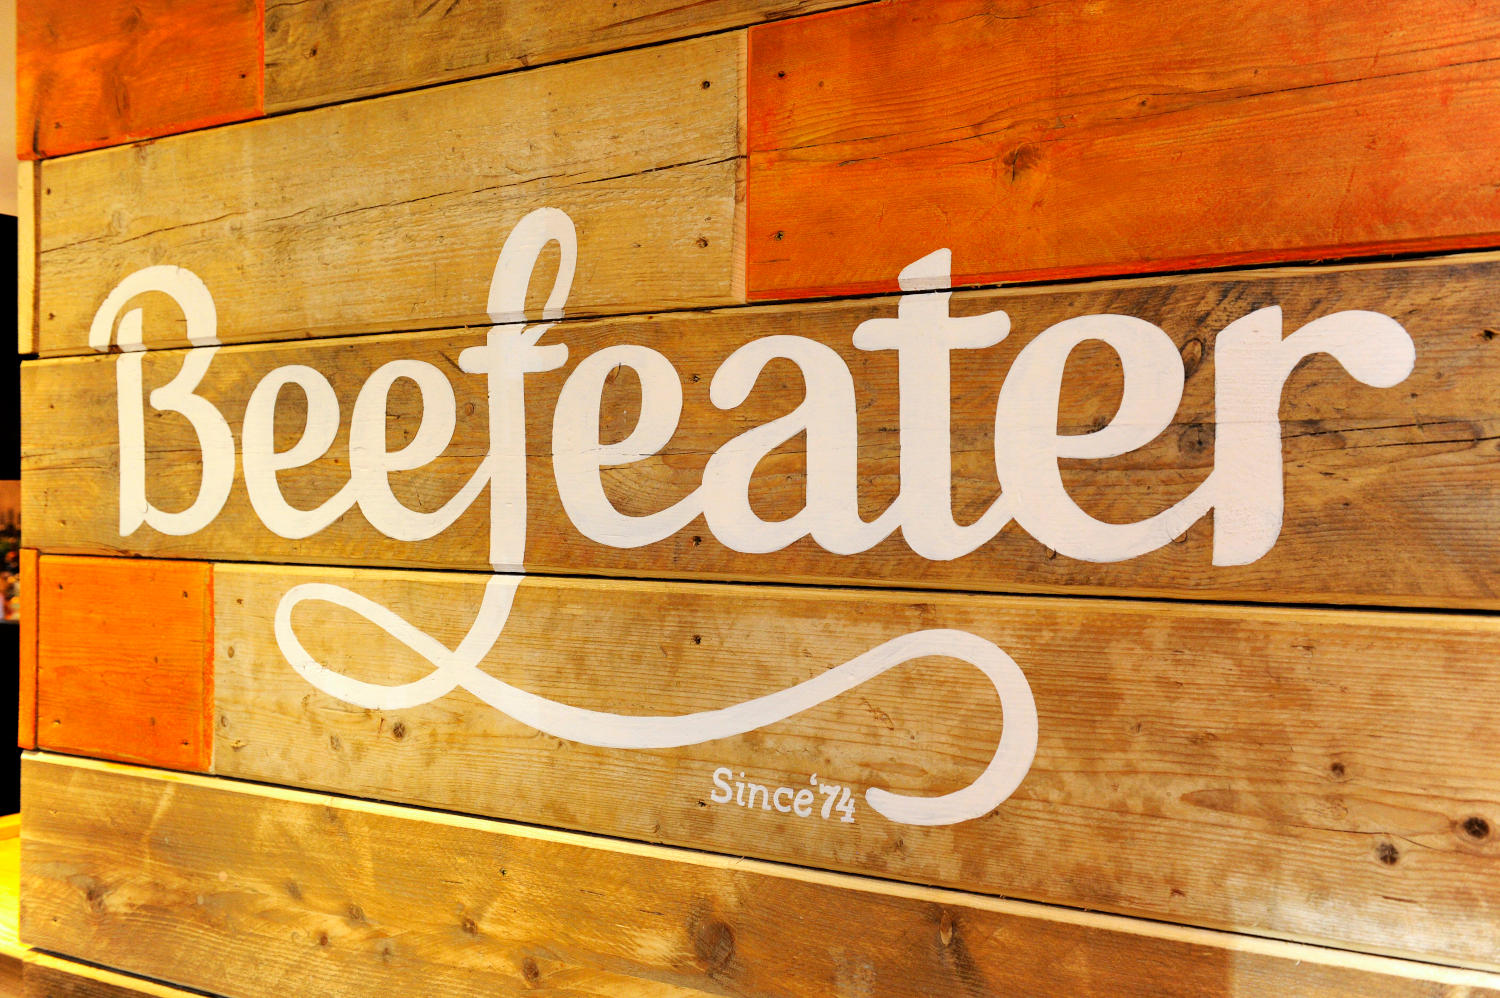 Beefeater Restaurant Eureka Park Beefeater Ashford 01233 739282